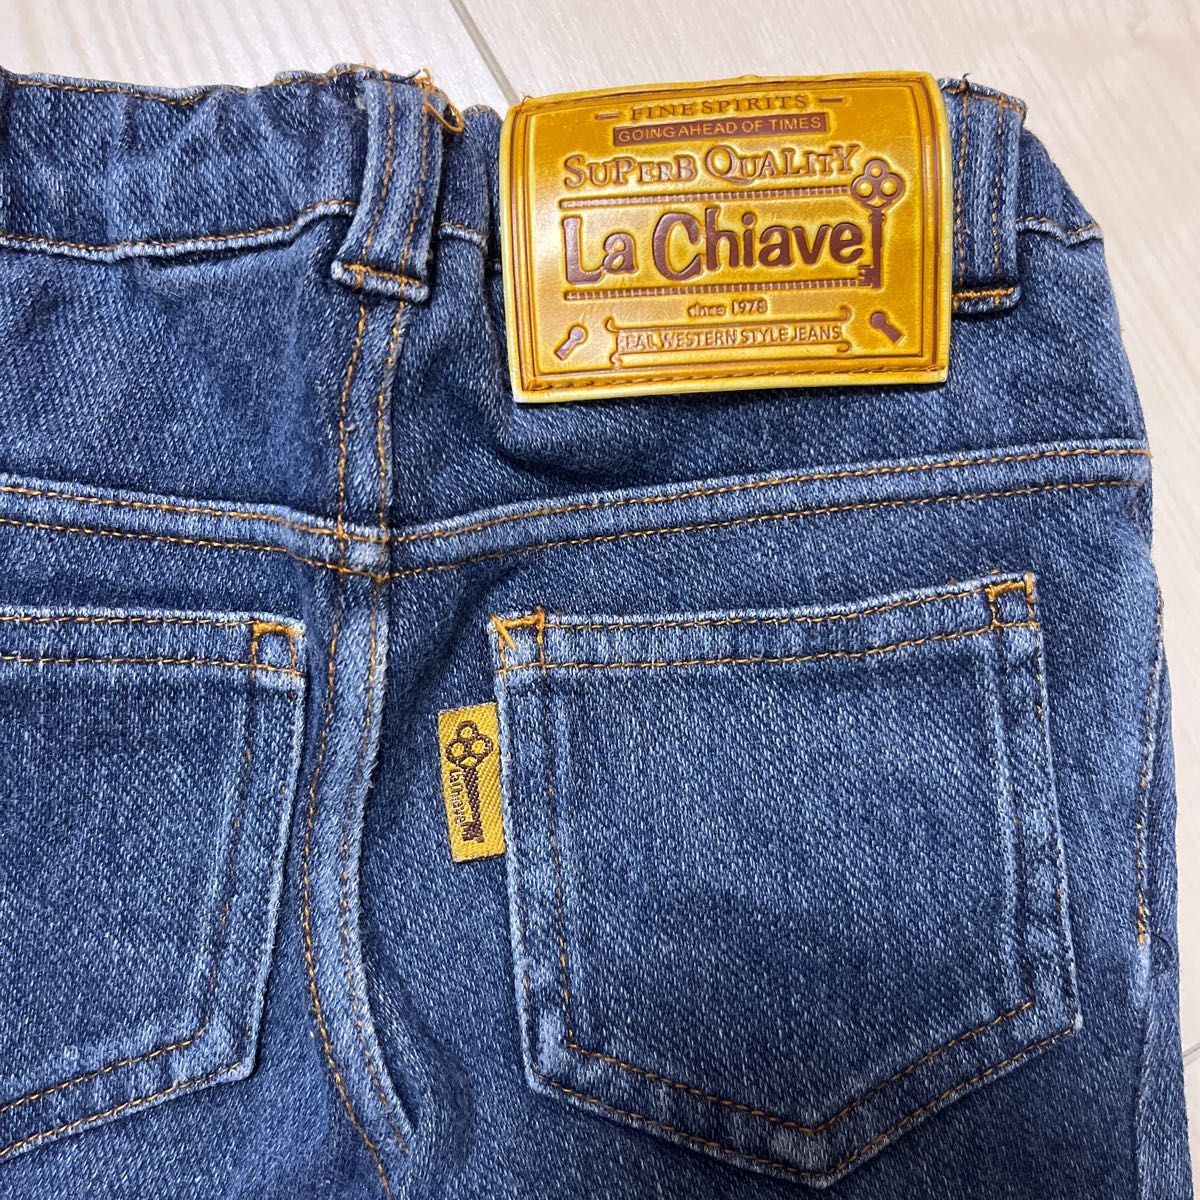 キムラタン La Chiave 長ズボン サイズ80